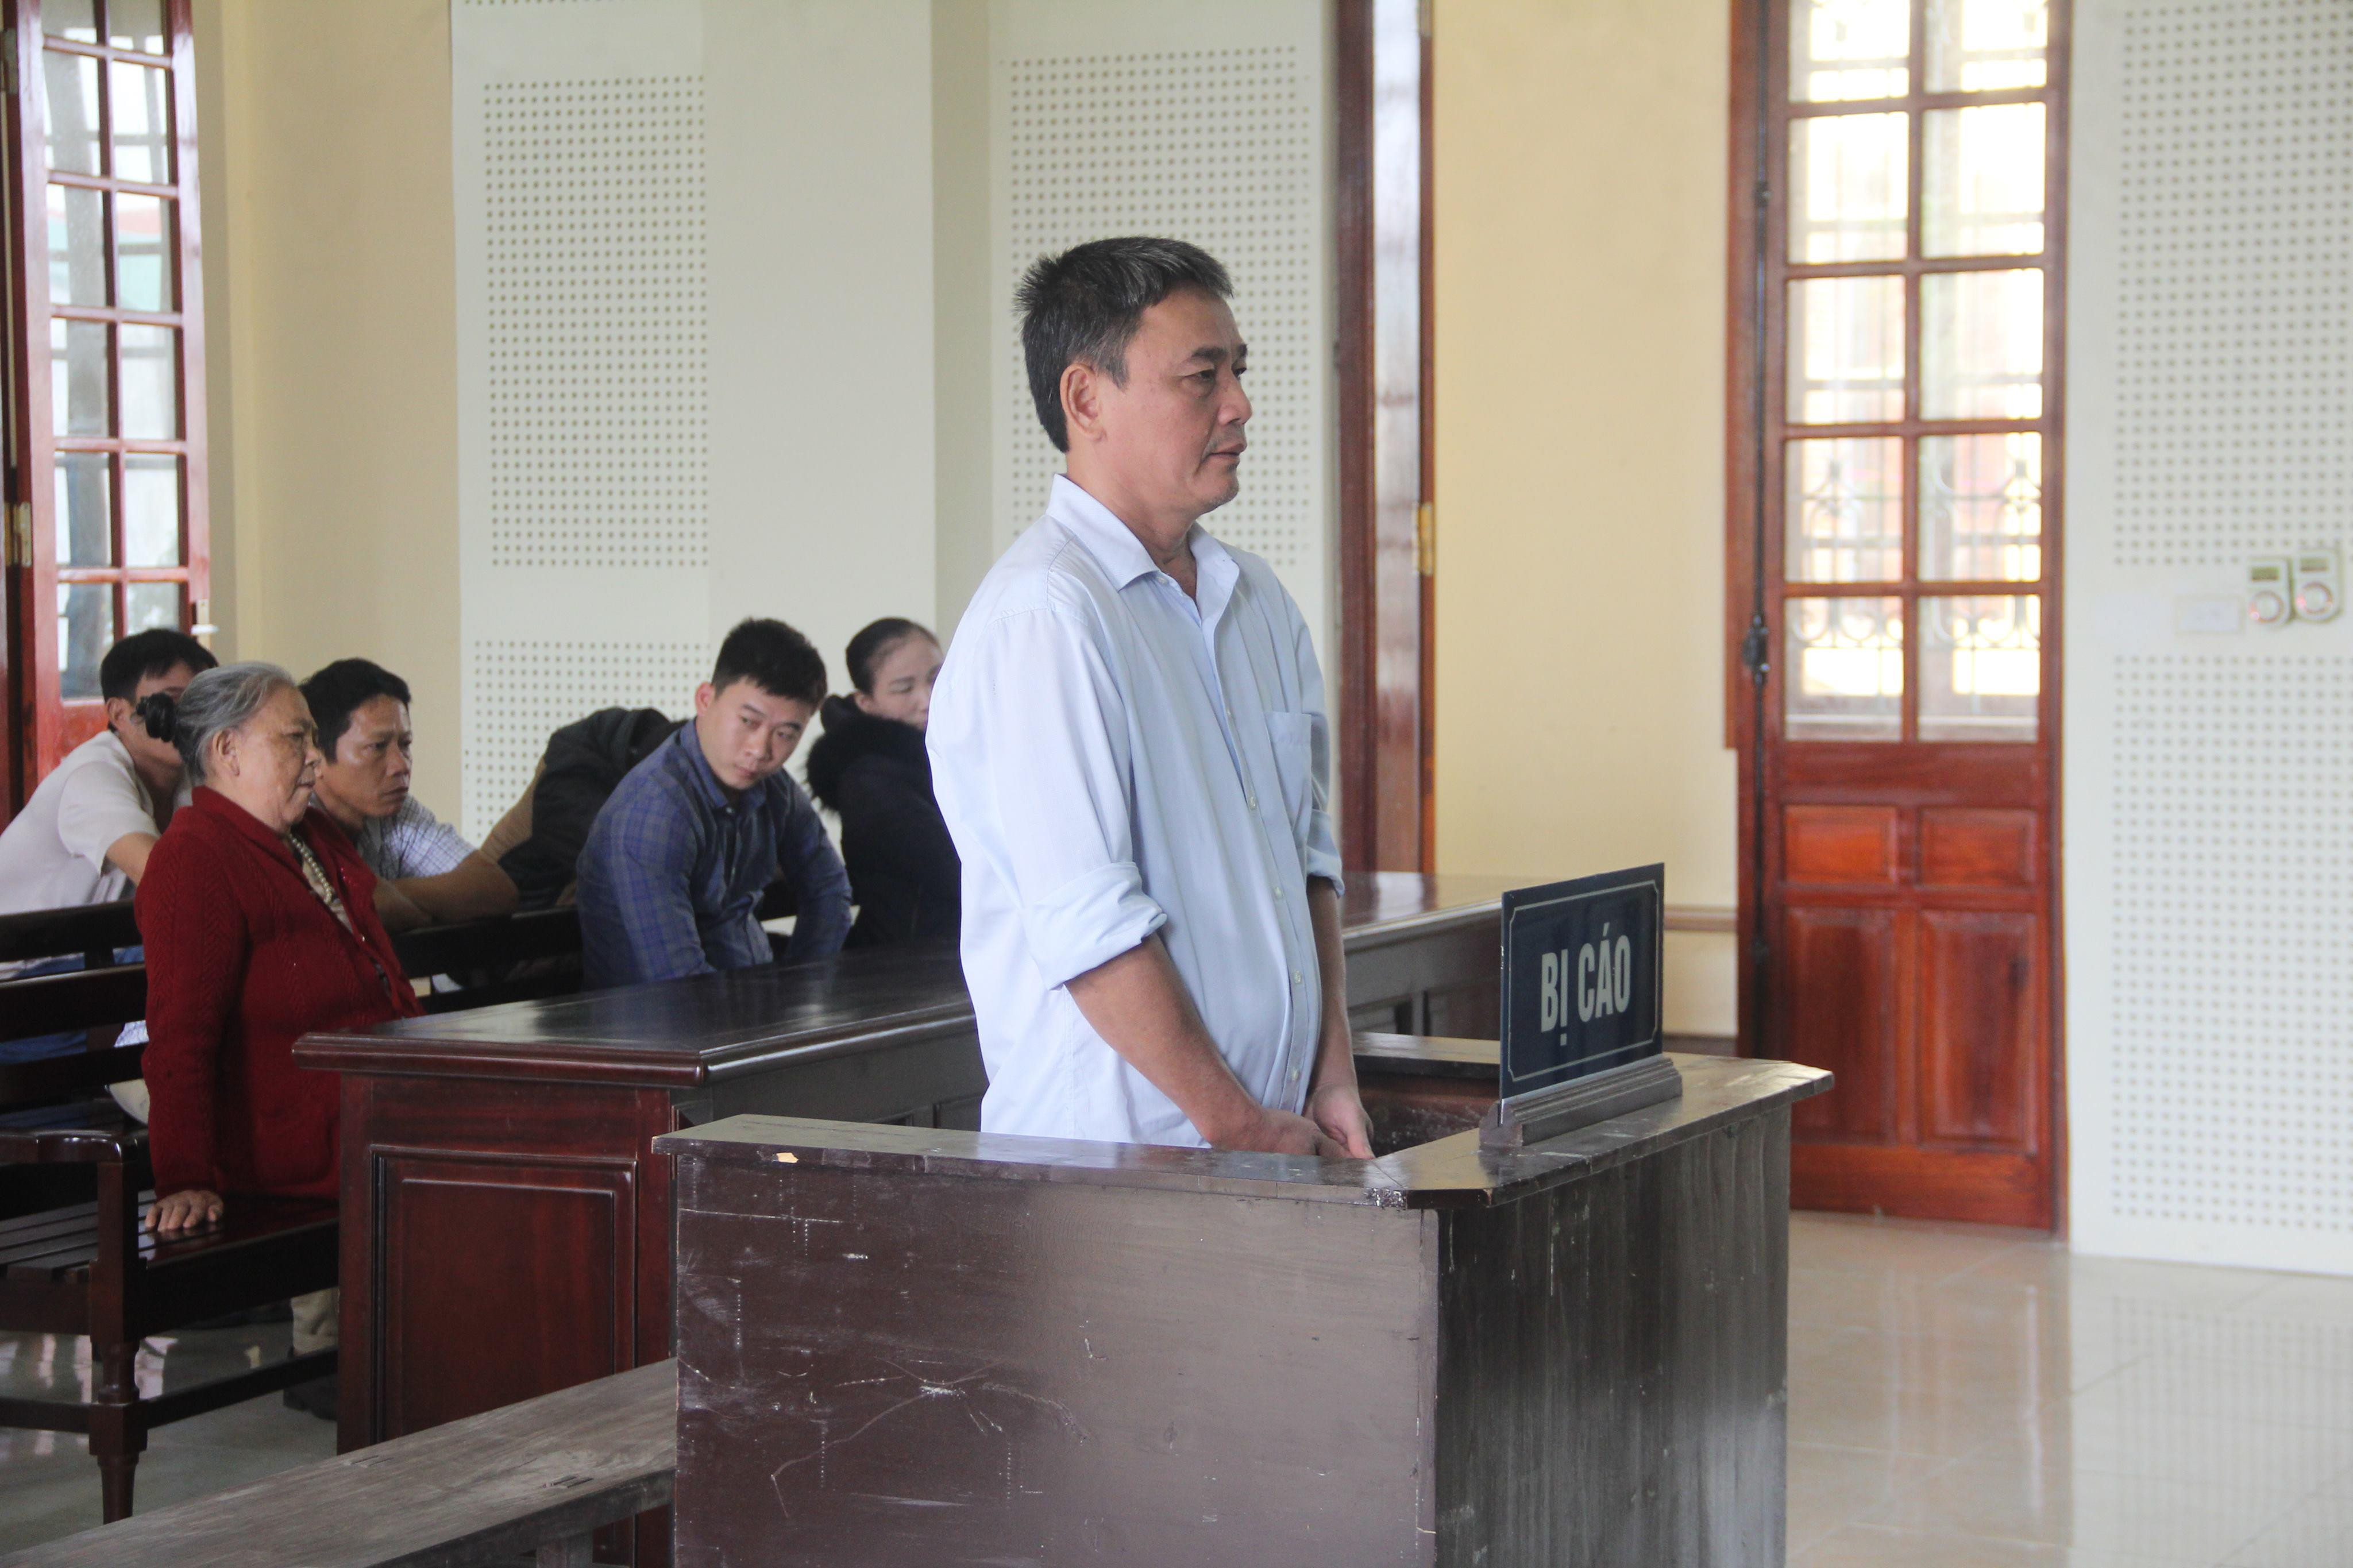 Bị cáo Nguyễn Bá Định tại phiên tòa hôm nay đã xin lỗi và mong sự tha thứ từ gia đình bị hại. Ảnh: Quỳnh An.